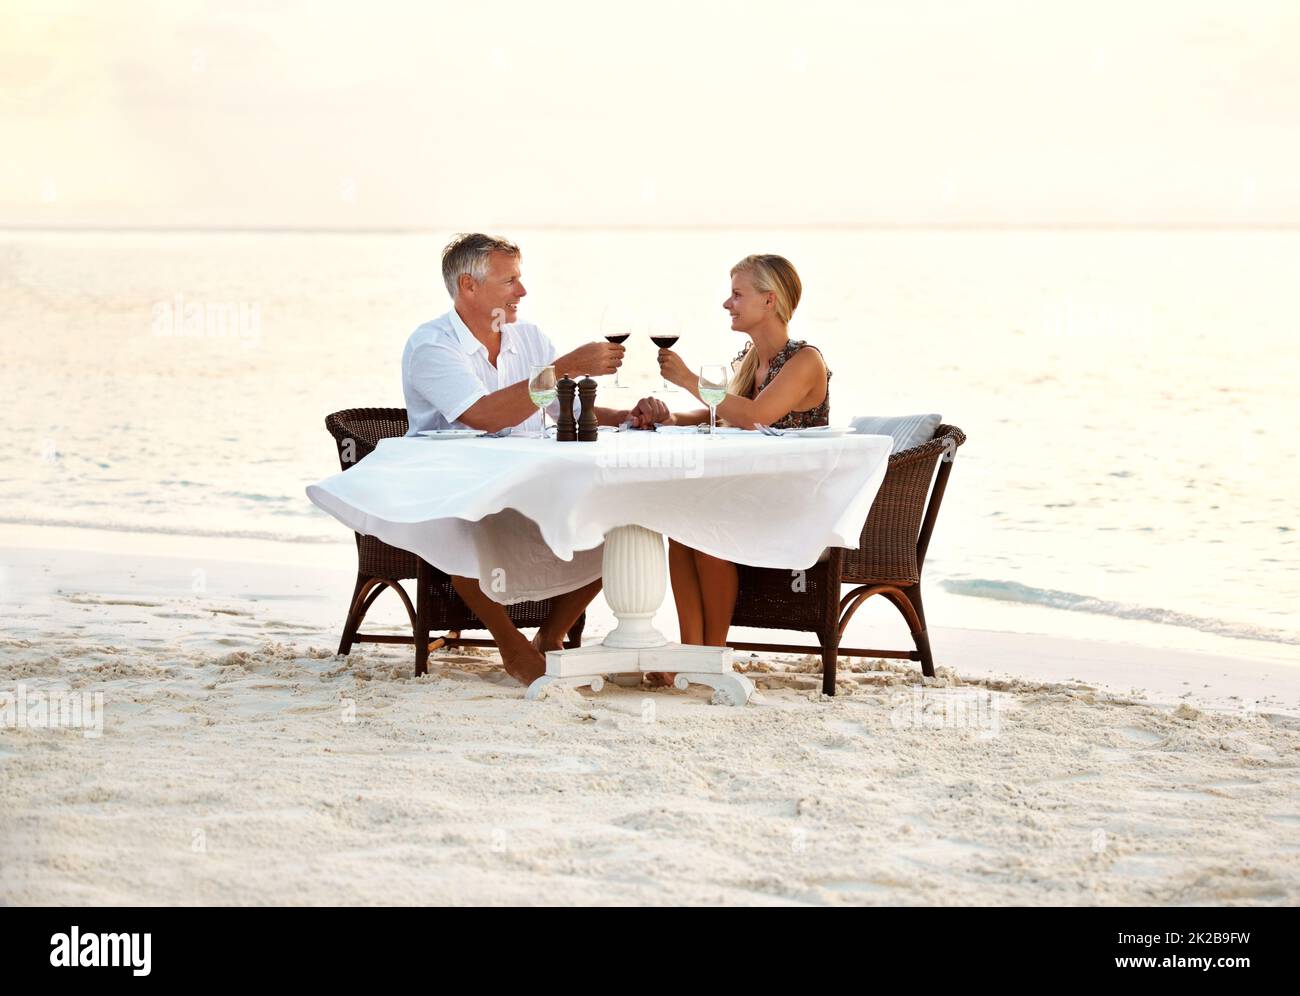 Pareja de mediana edad disfrutando de una cena romántica en la playa. Foto de una pareja adulta disfrutando de una cena romántica en la playa. Foto de stock